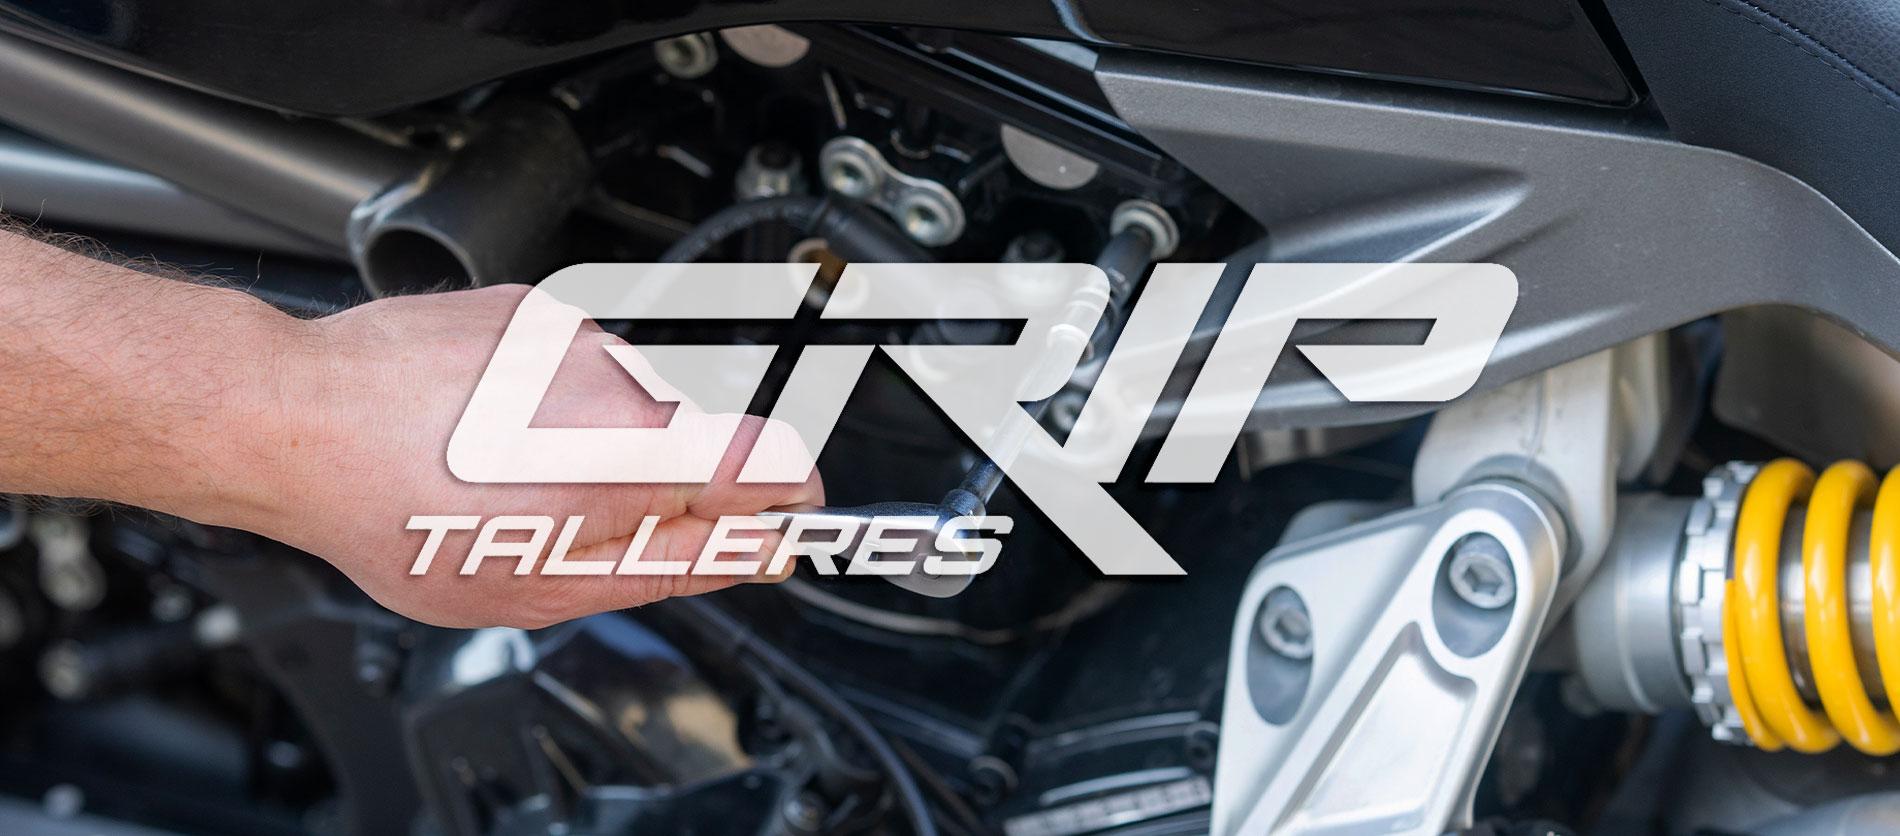 En Talleres GRIP somos capaces de resolver cualquier avería eléctrica que pueda tener tu moto.